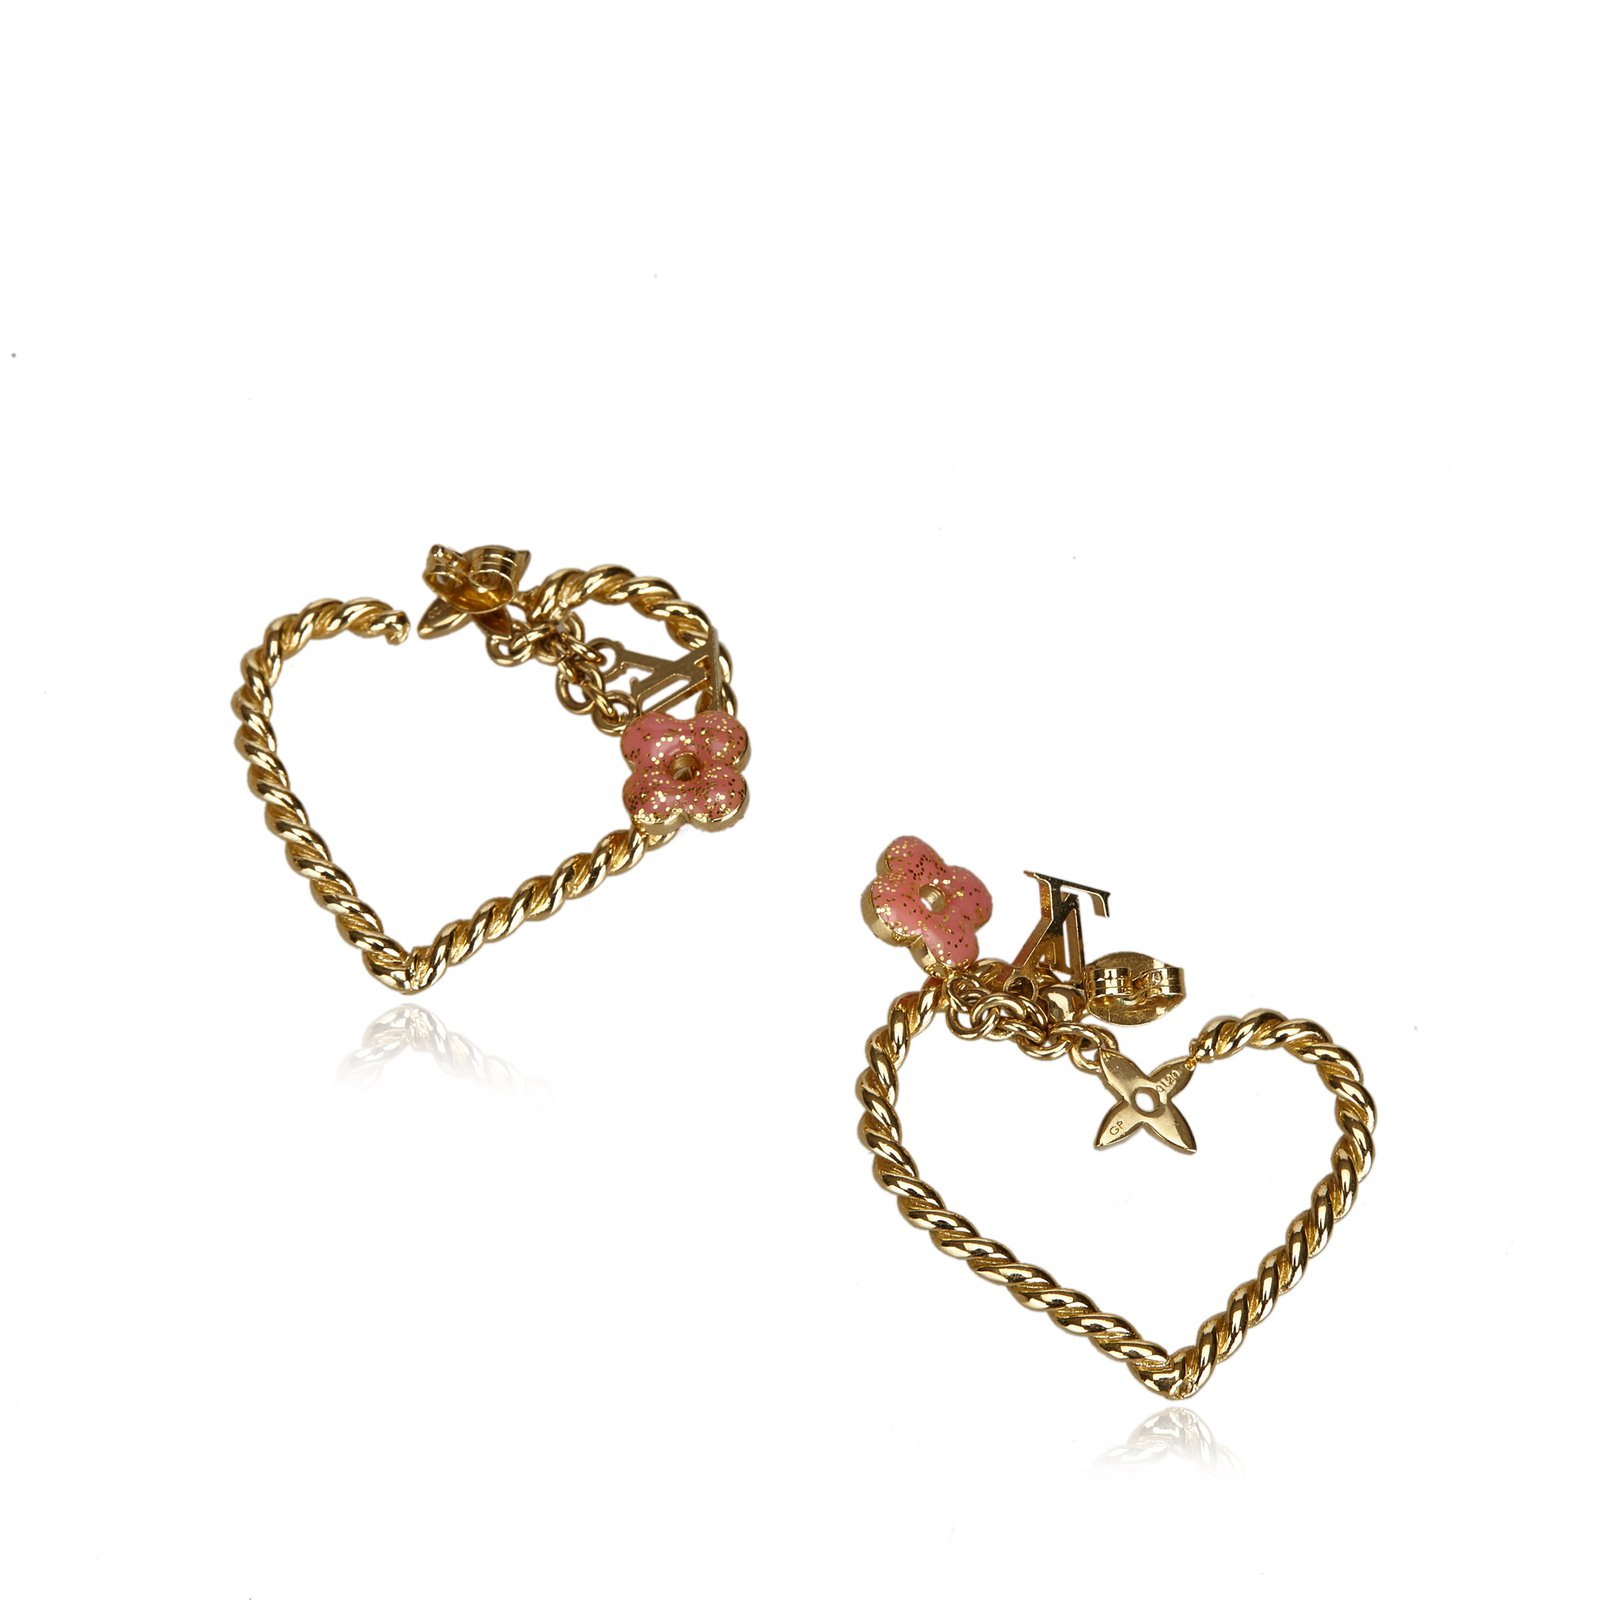 vuitton heart earrings